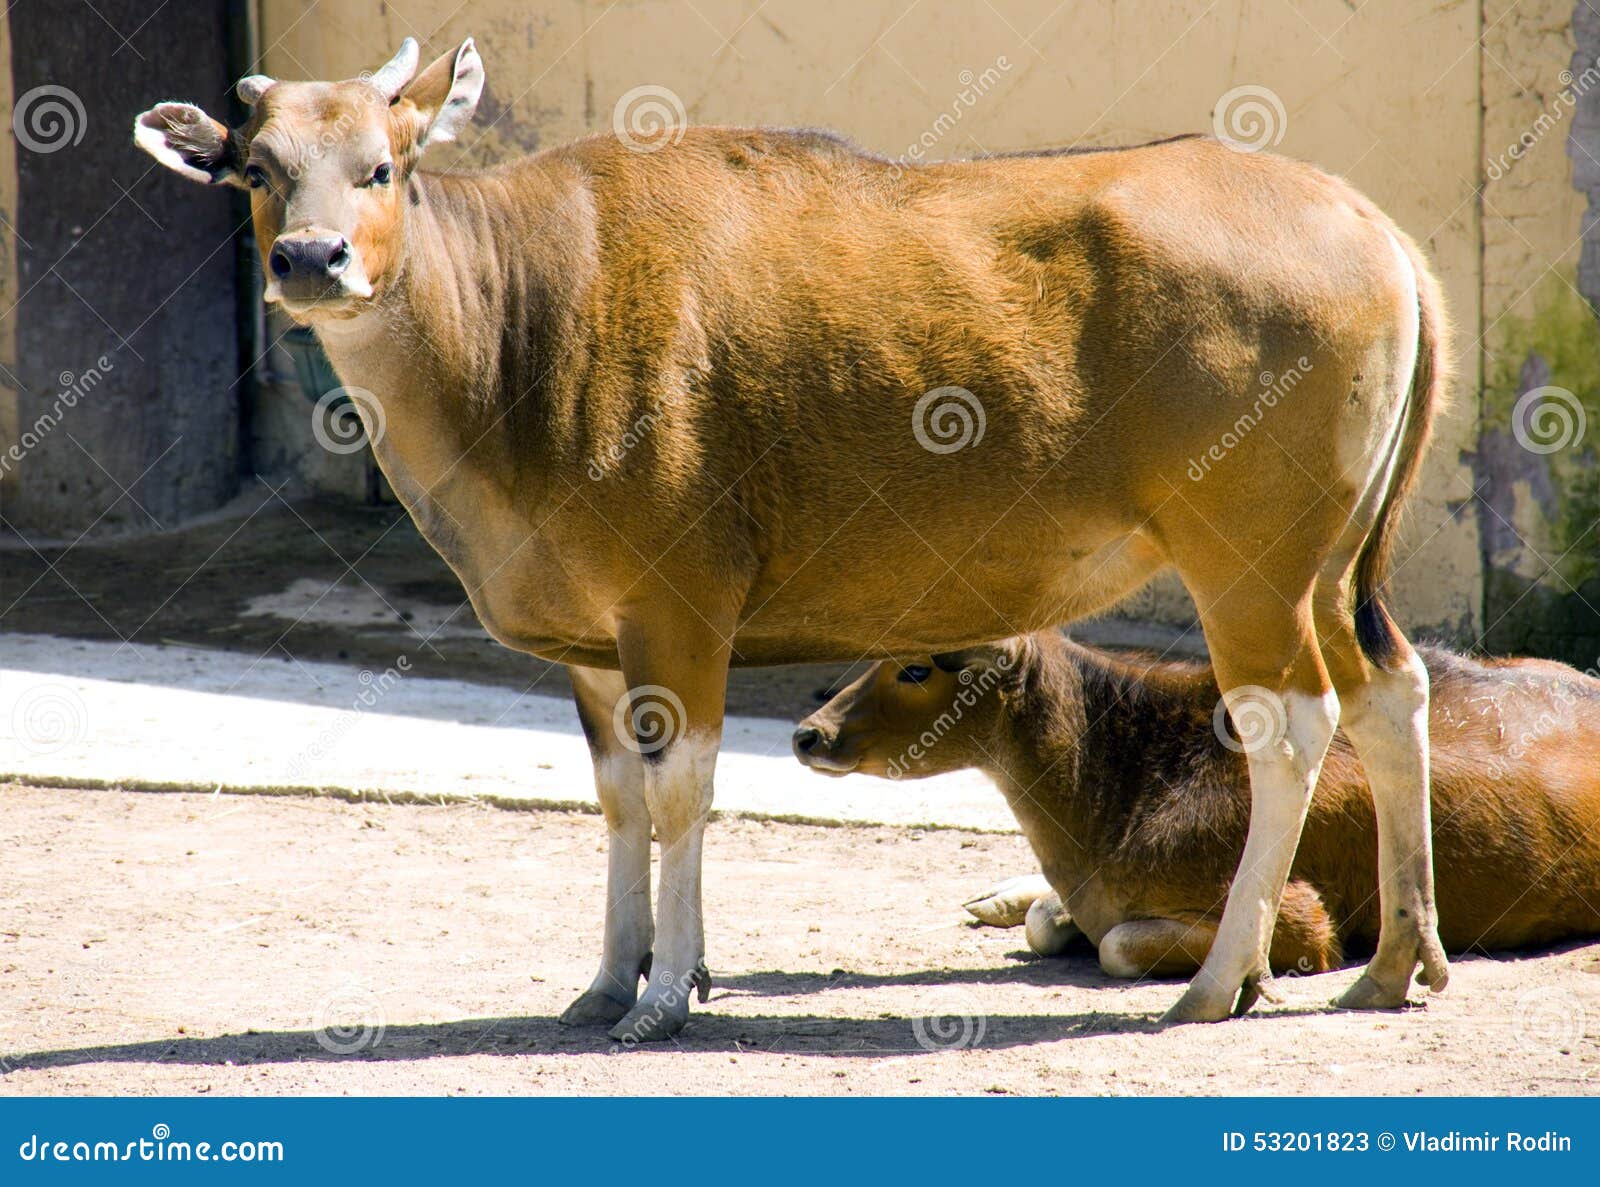 bull banteng ruminant artiodactyl mammal bovid